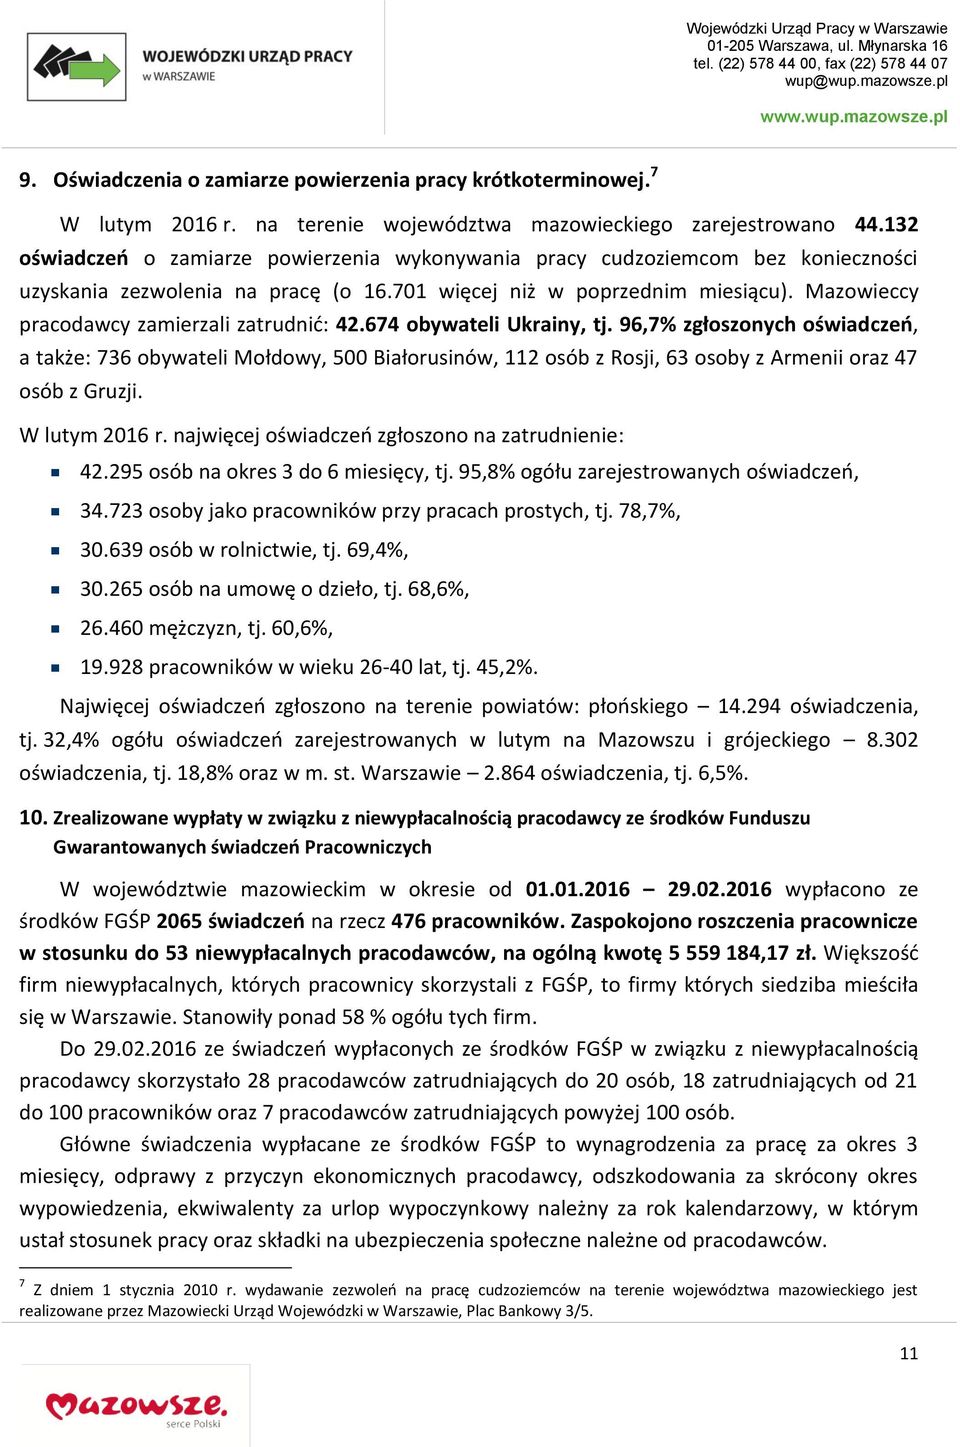 Mazowieccy pracodawcy zamierzali zatrudnić: 42.674 obywateli Ukrainy, tj.